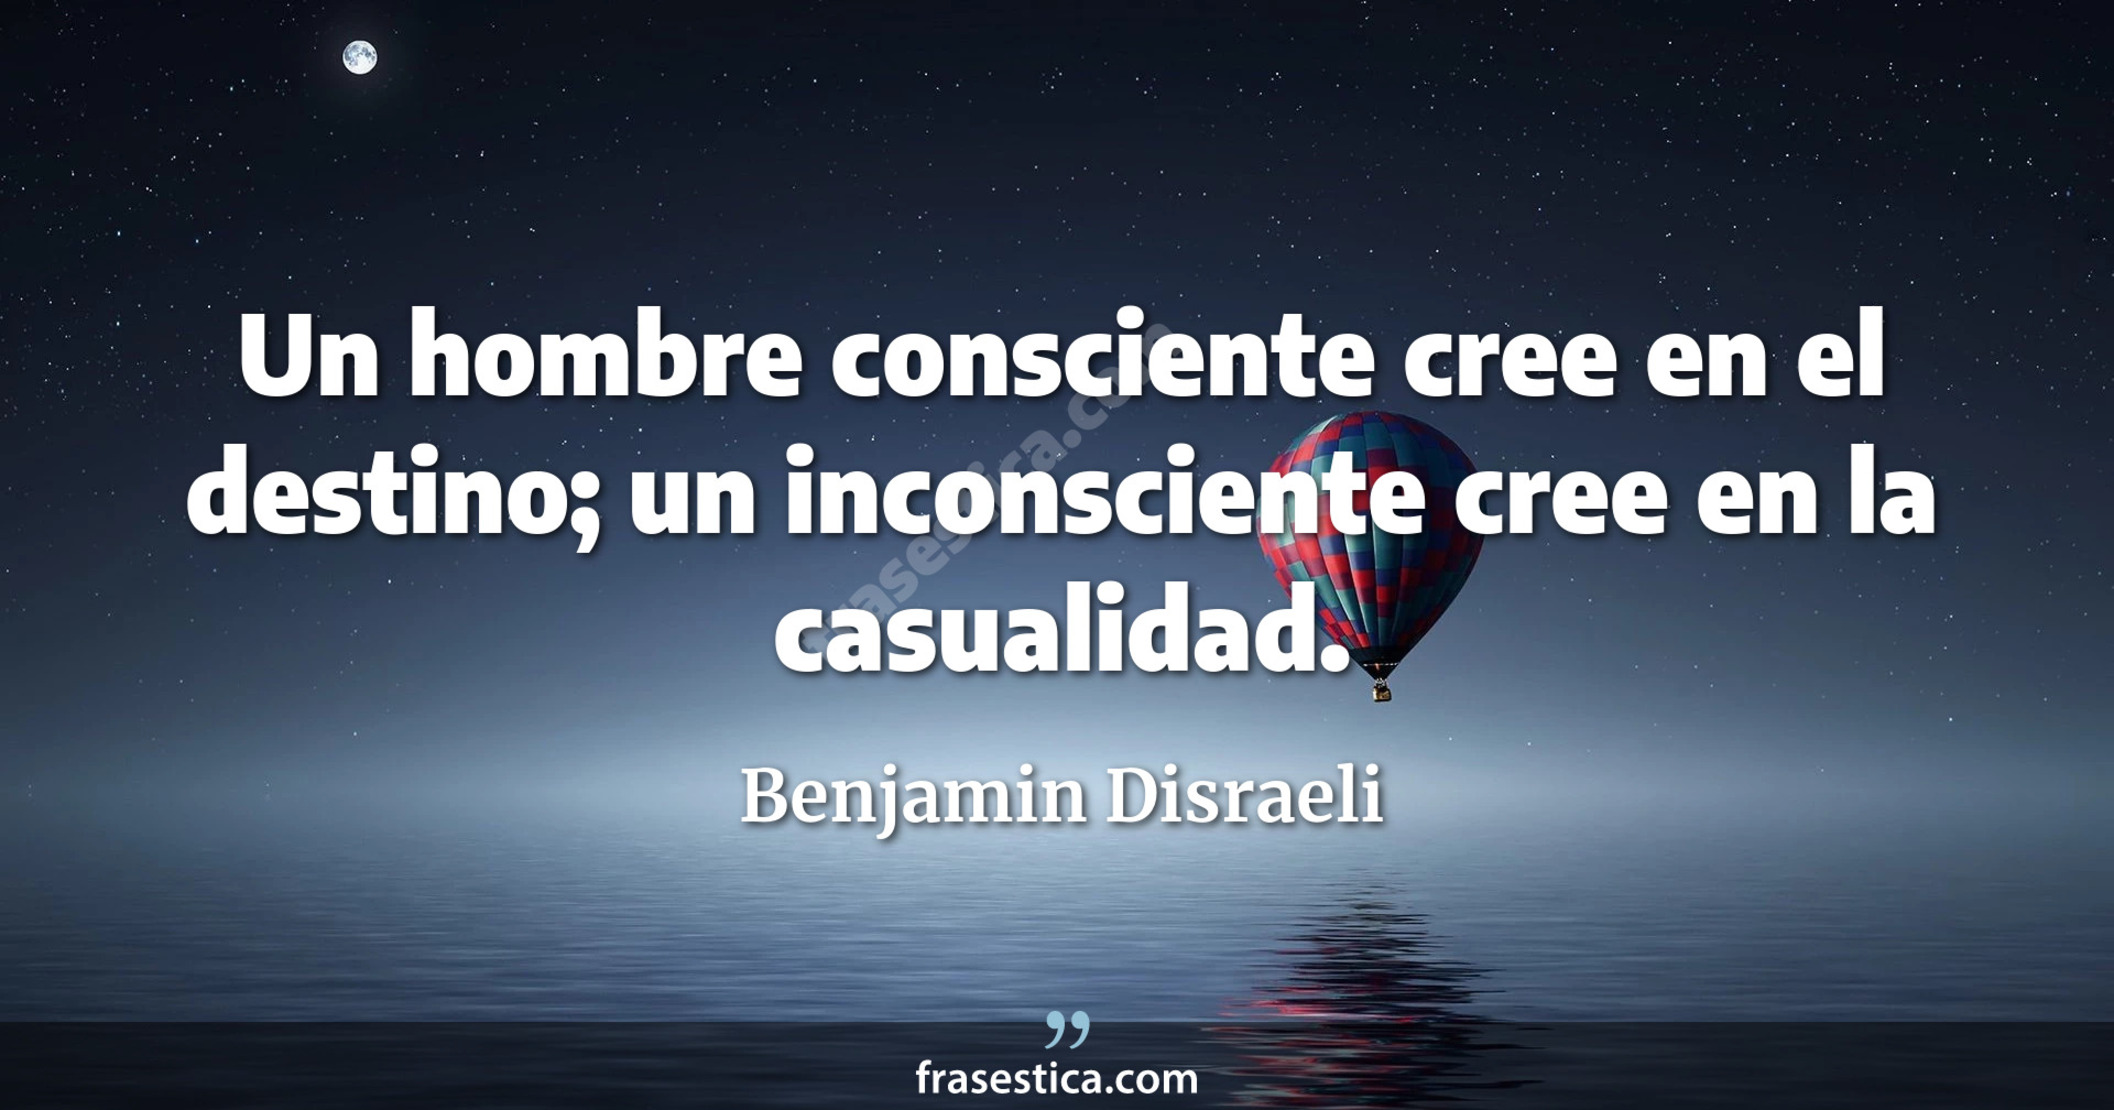 Un hombre consciente cree en el destino; un inconsciente cree en la casualidad. - Benjamin Disraeli